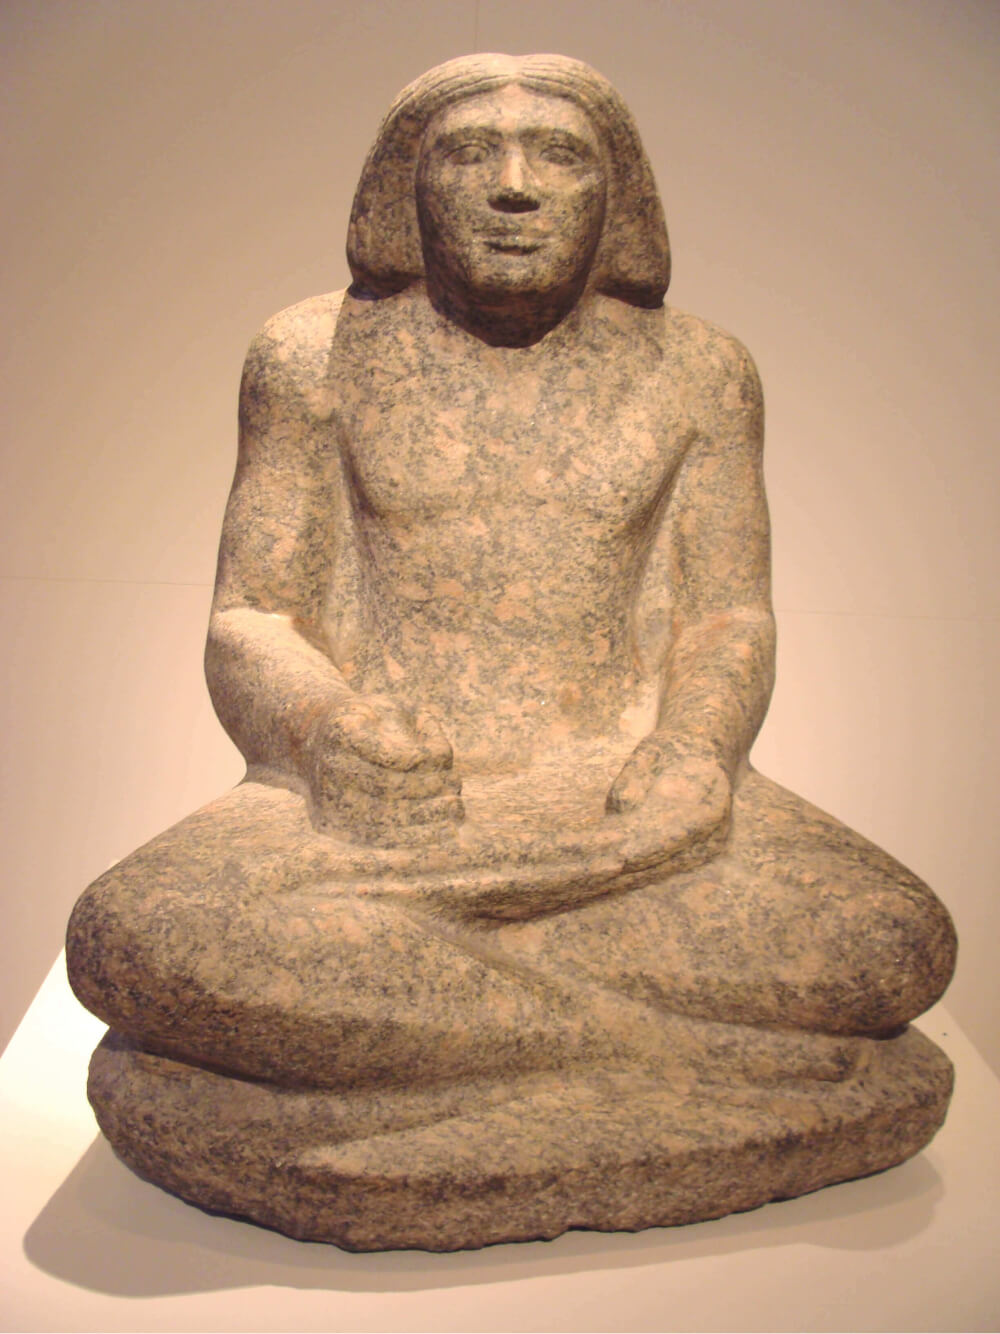 Fotografia de escultura em pedra. Homem escriba sentado de pernas cruzadas. Cabelo liso, na altura dos ombros. Braços apoiados nas pernas. Mãos seguram um papiro.